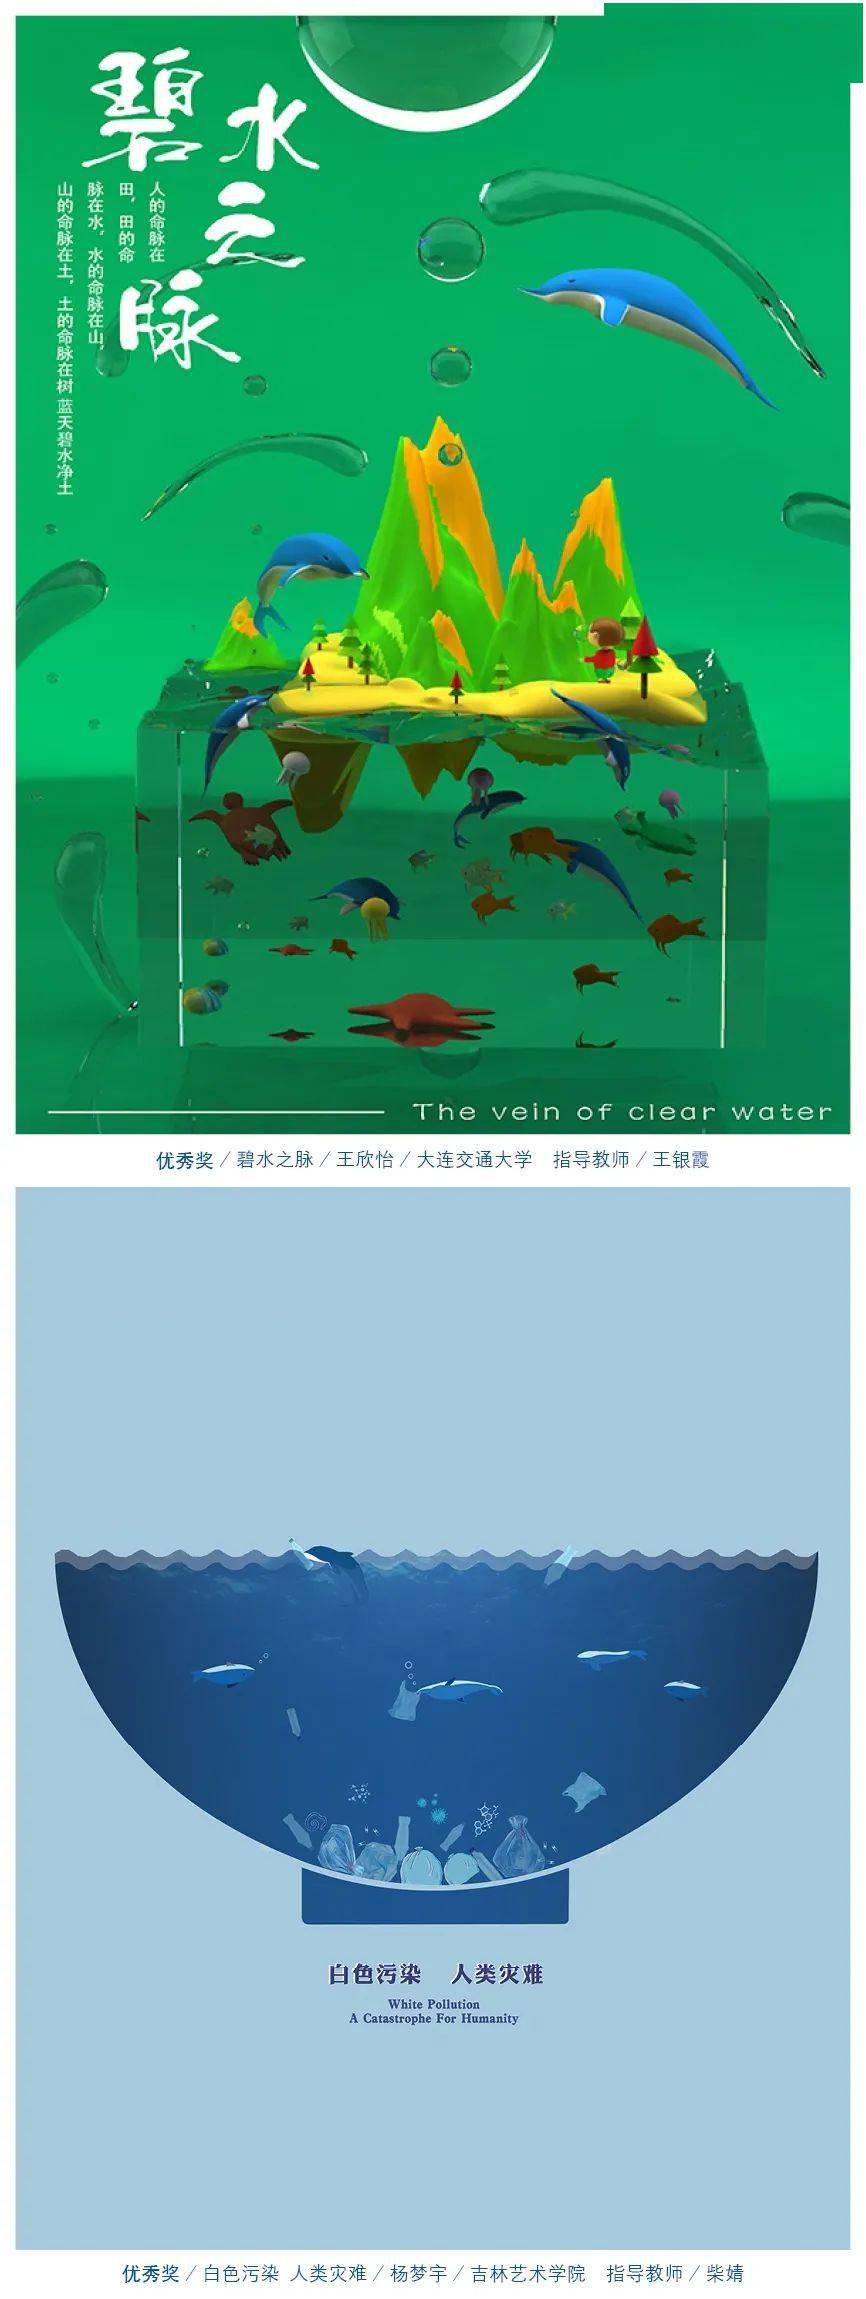 海洋大赛作品设计说明图片